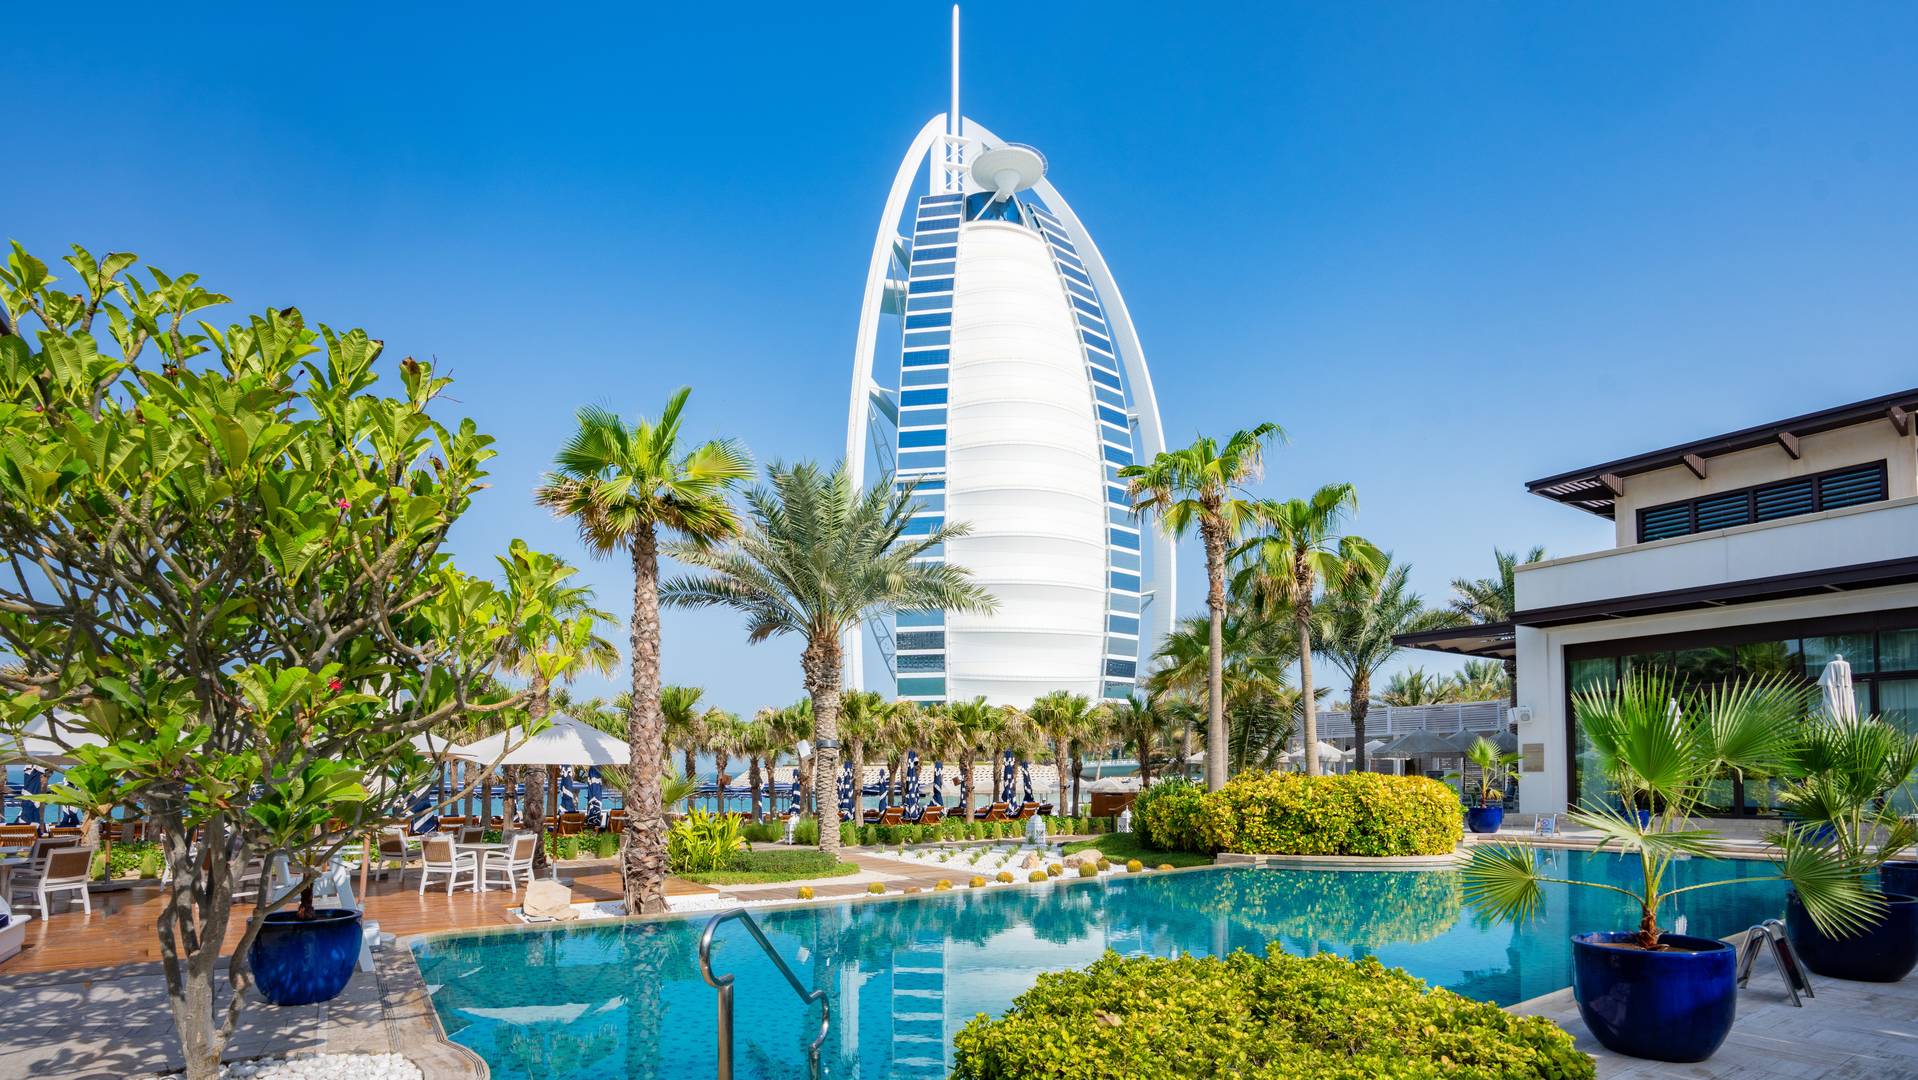 Summersalt | Restaurant & Beach Club at Jumeirah Al Naseem, Dubai